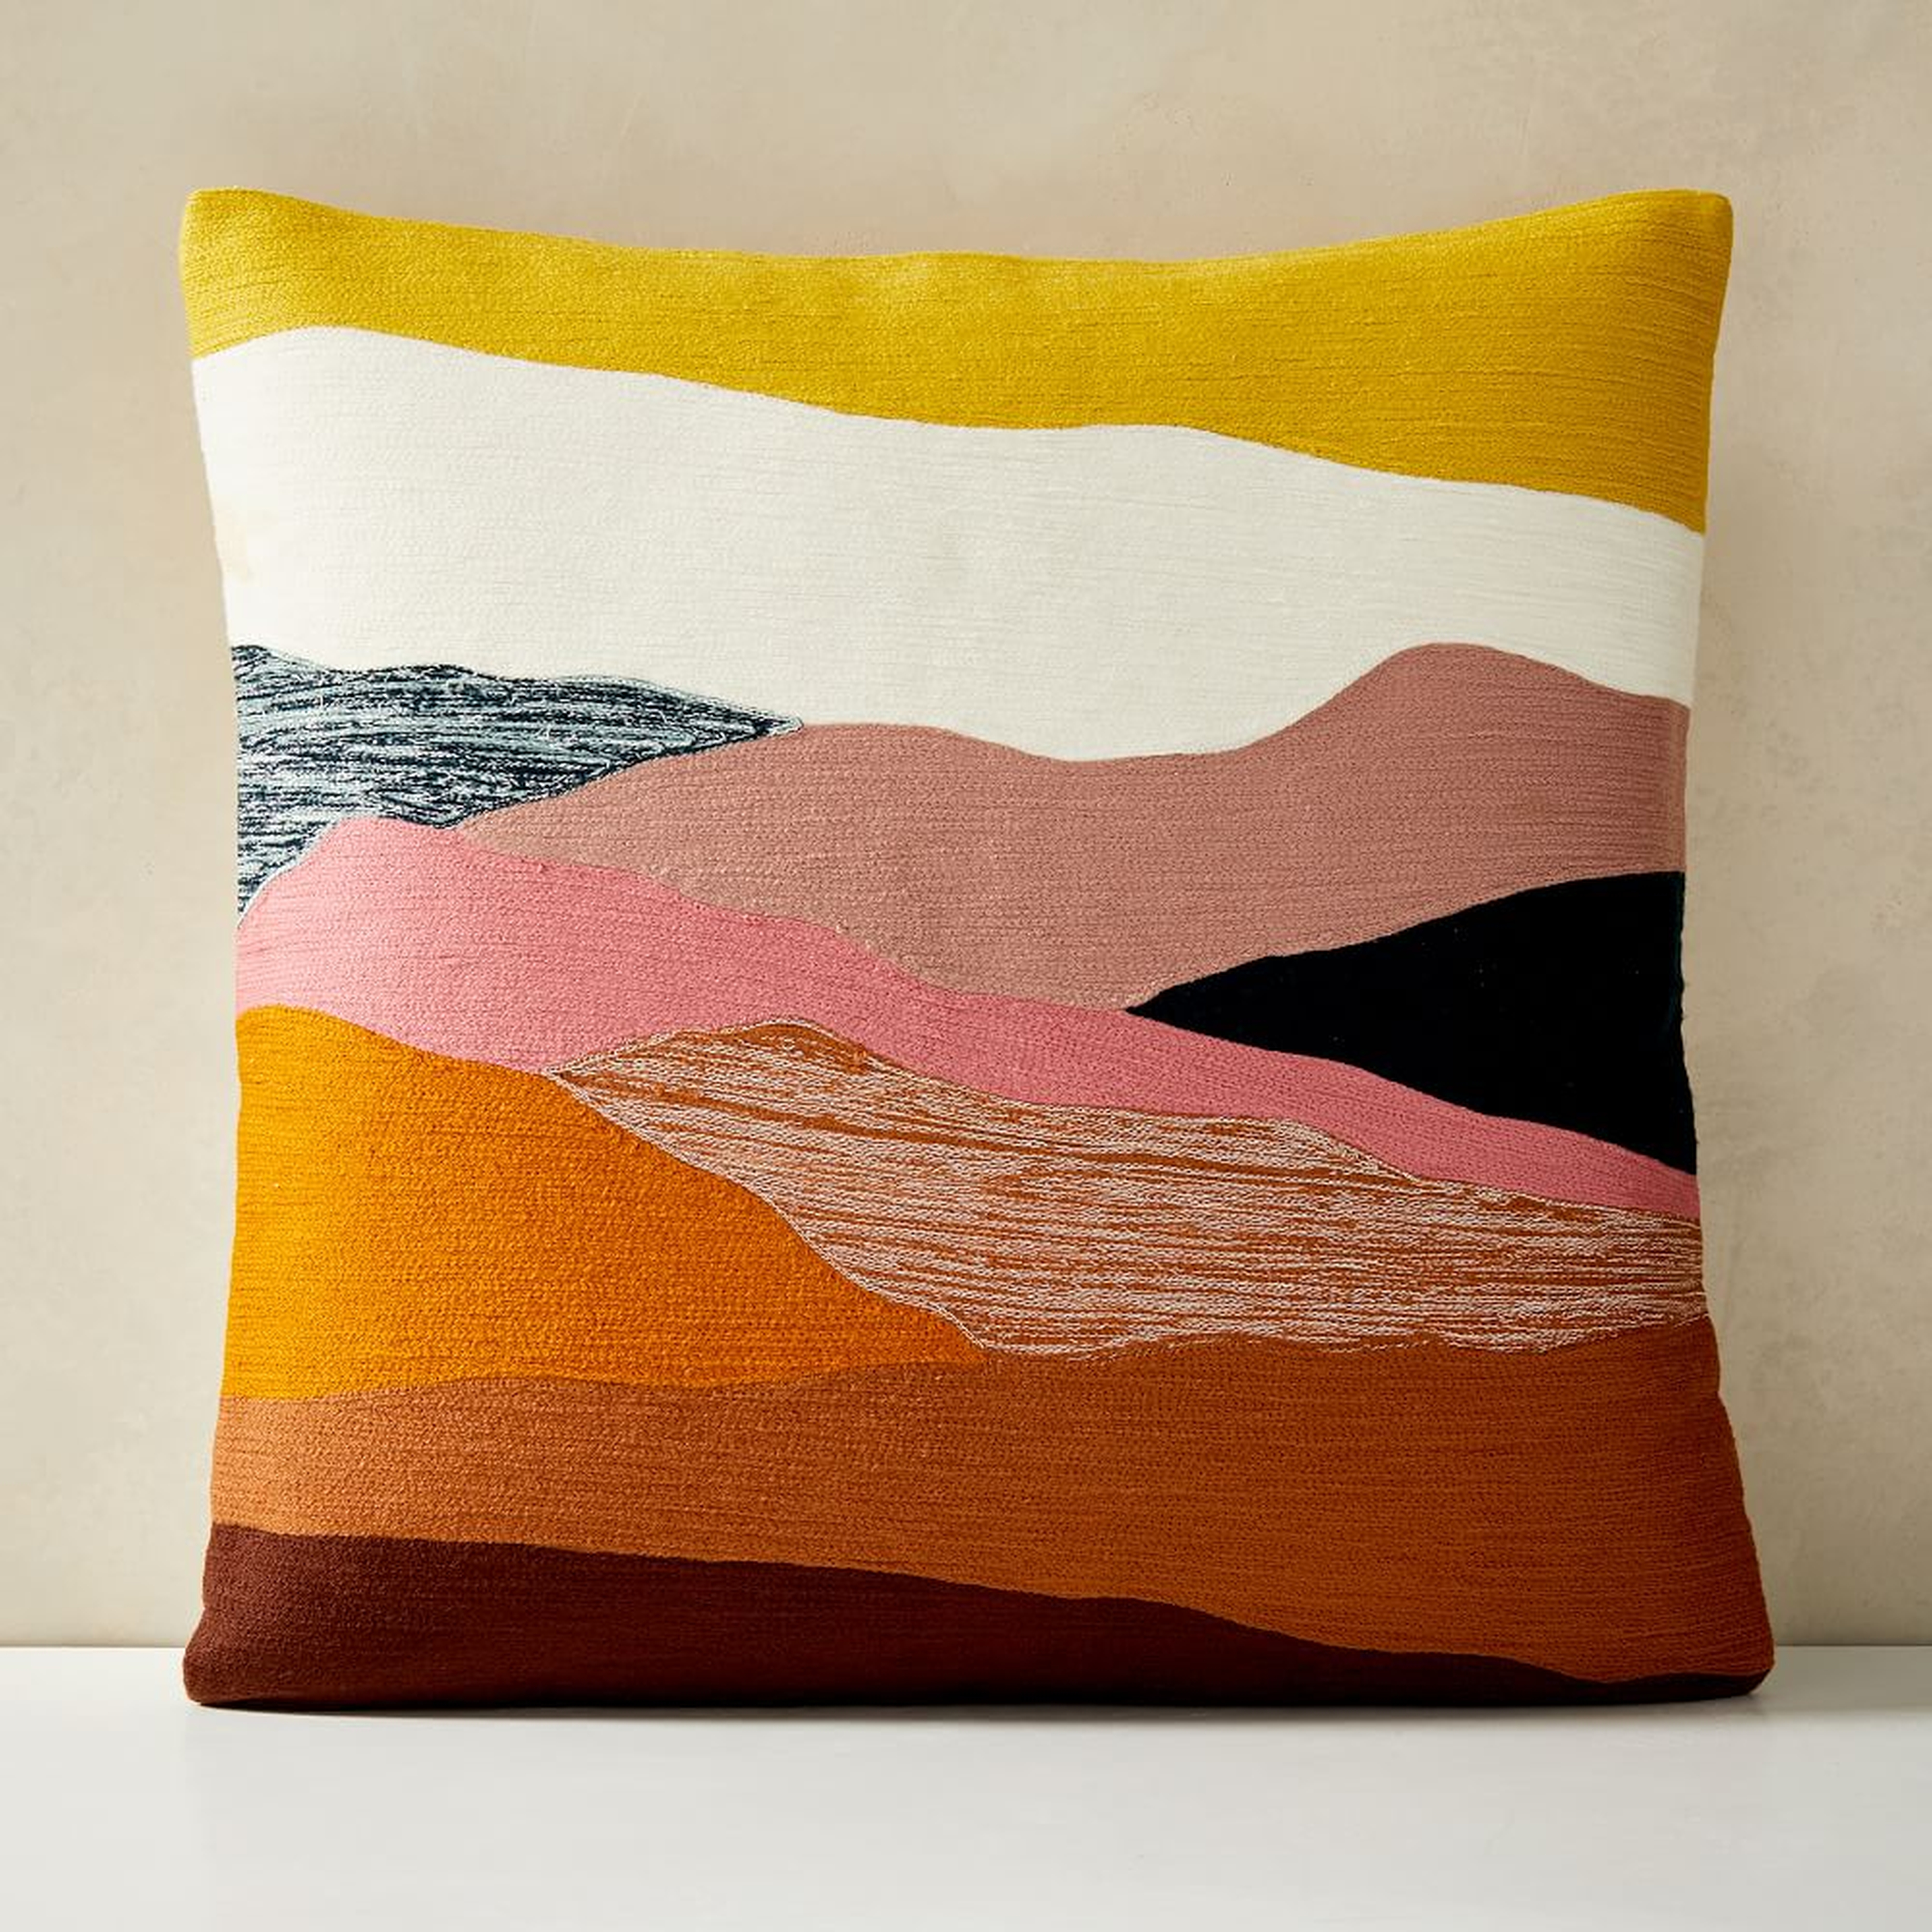 Crewel Landscape Pillow Cover, 20"x20", Desert Sunset - West Elm